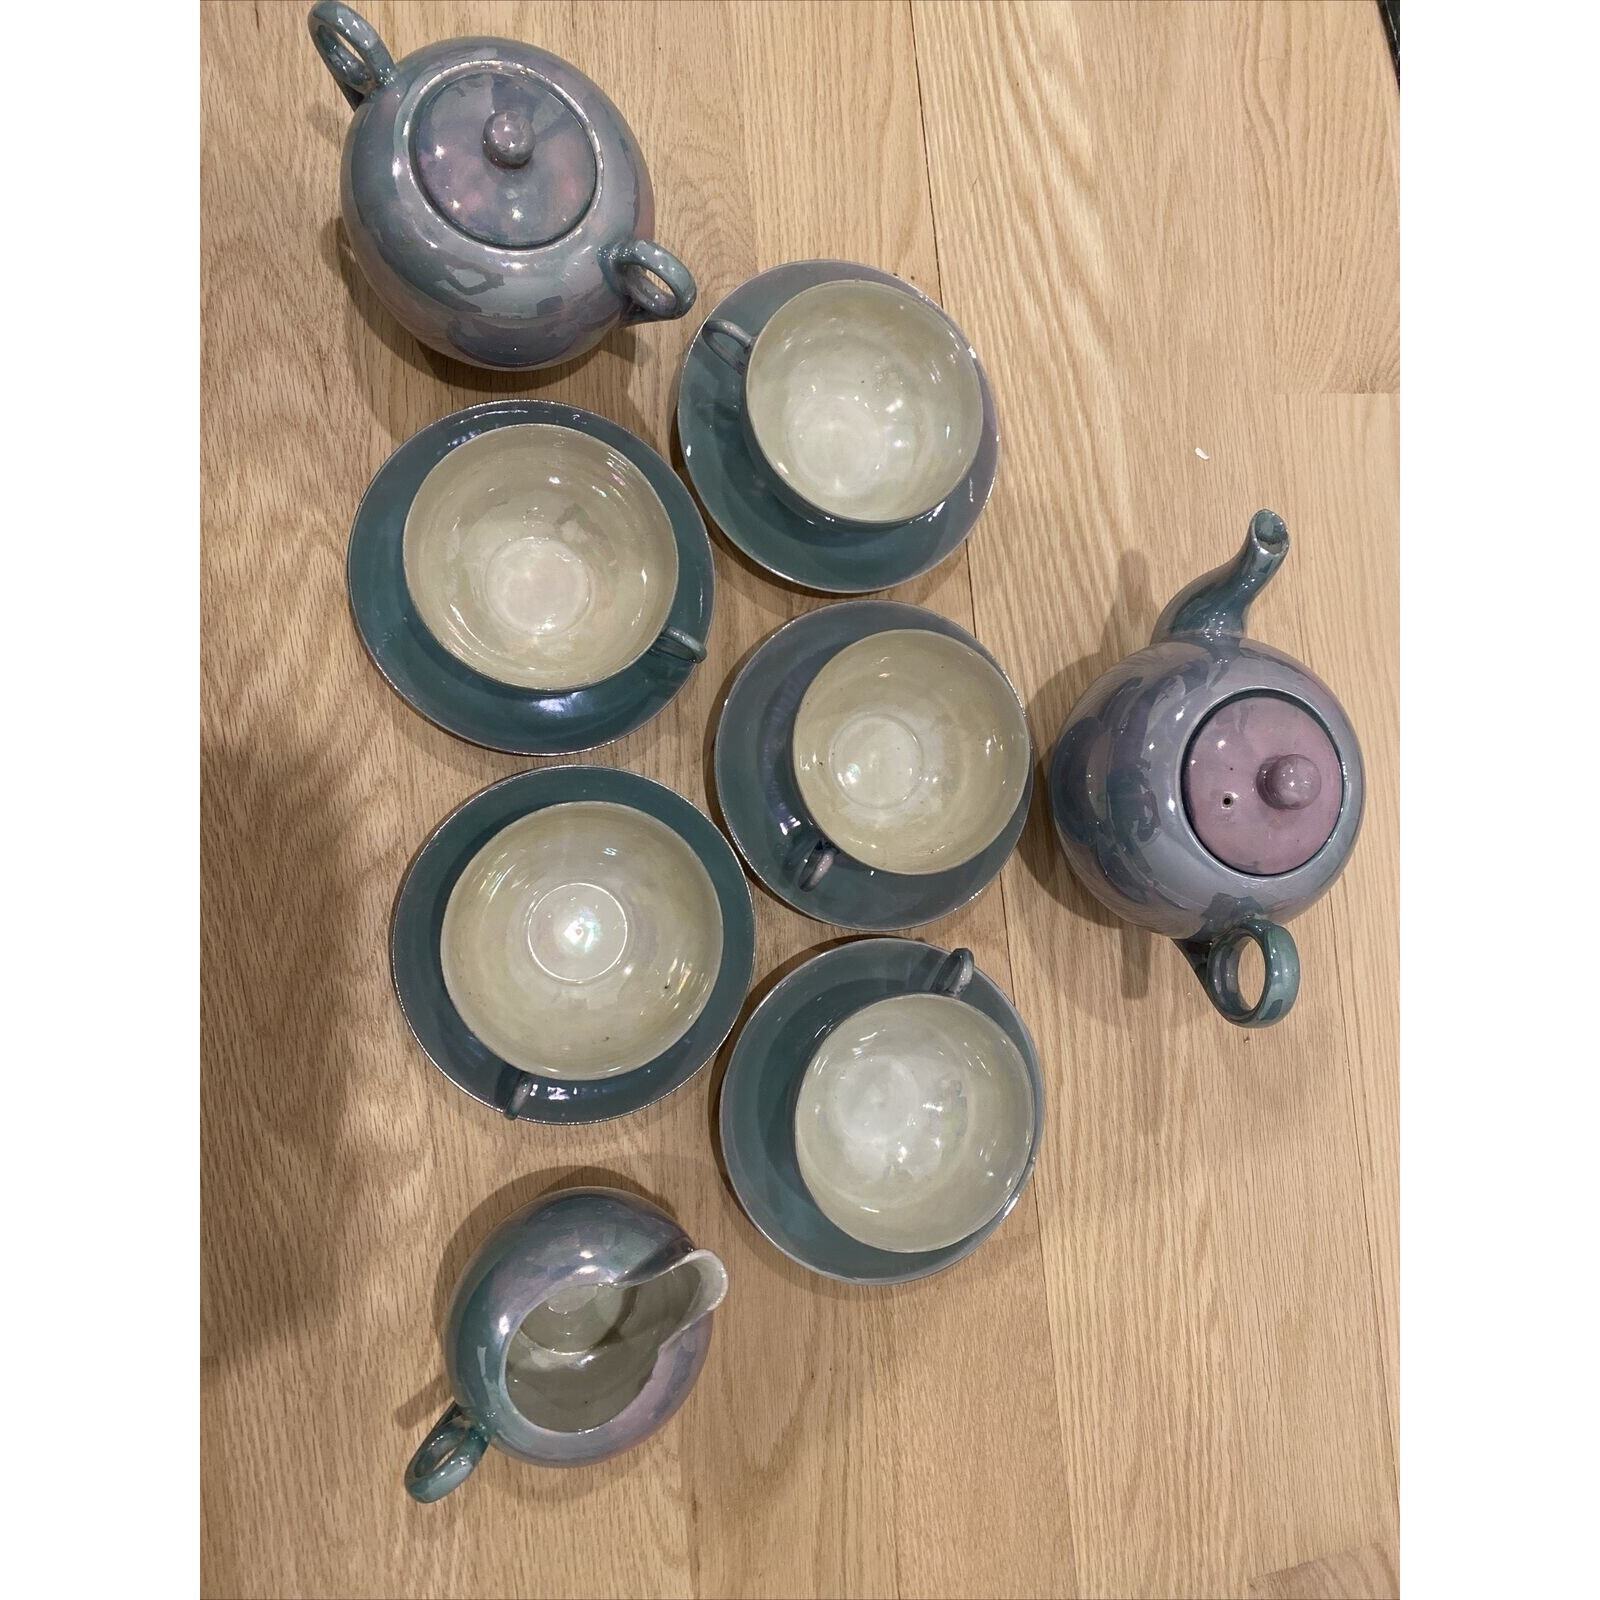 Lusterware Tea Set For 5 - Teapot, Sugar, Creamer, Cups & Saucers Japan Aqua